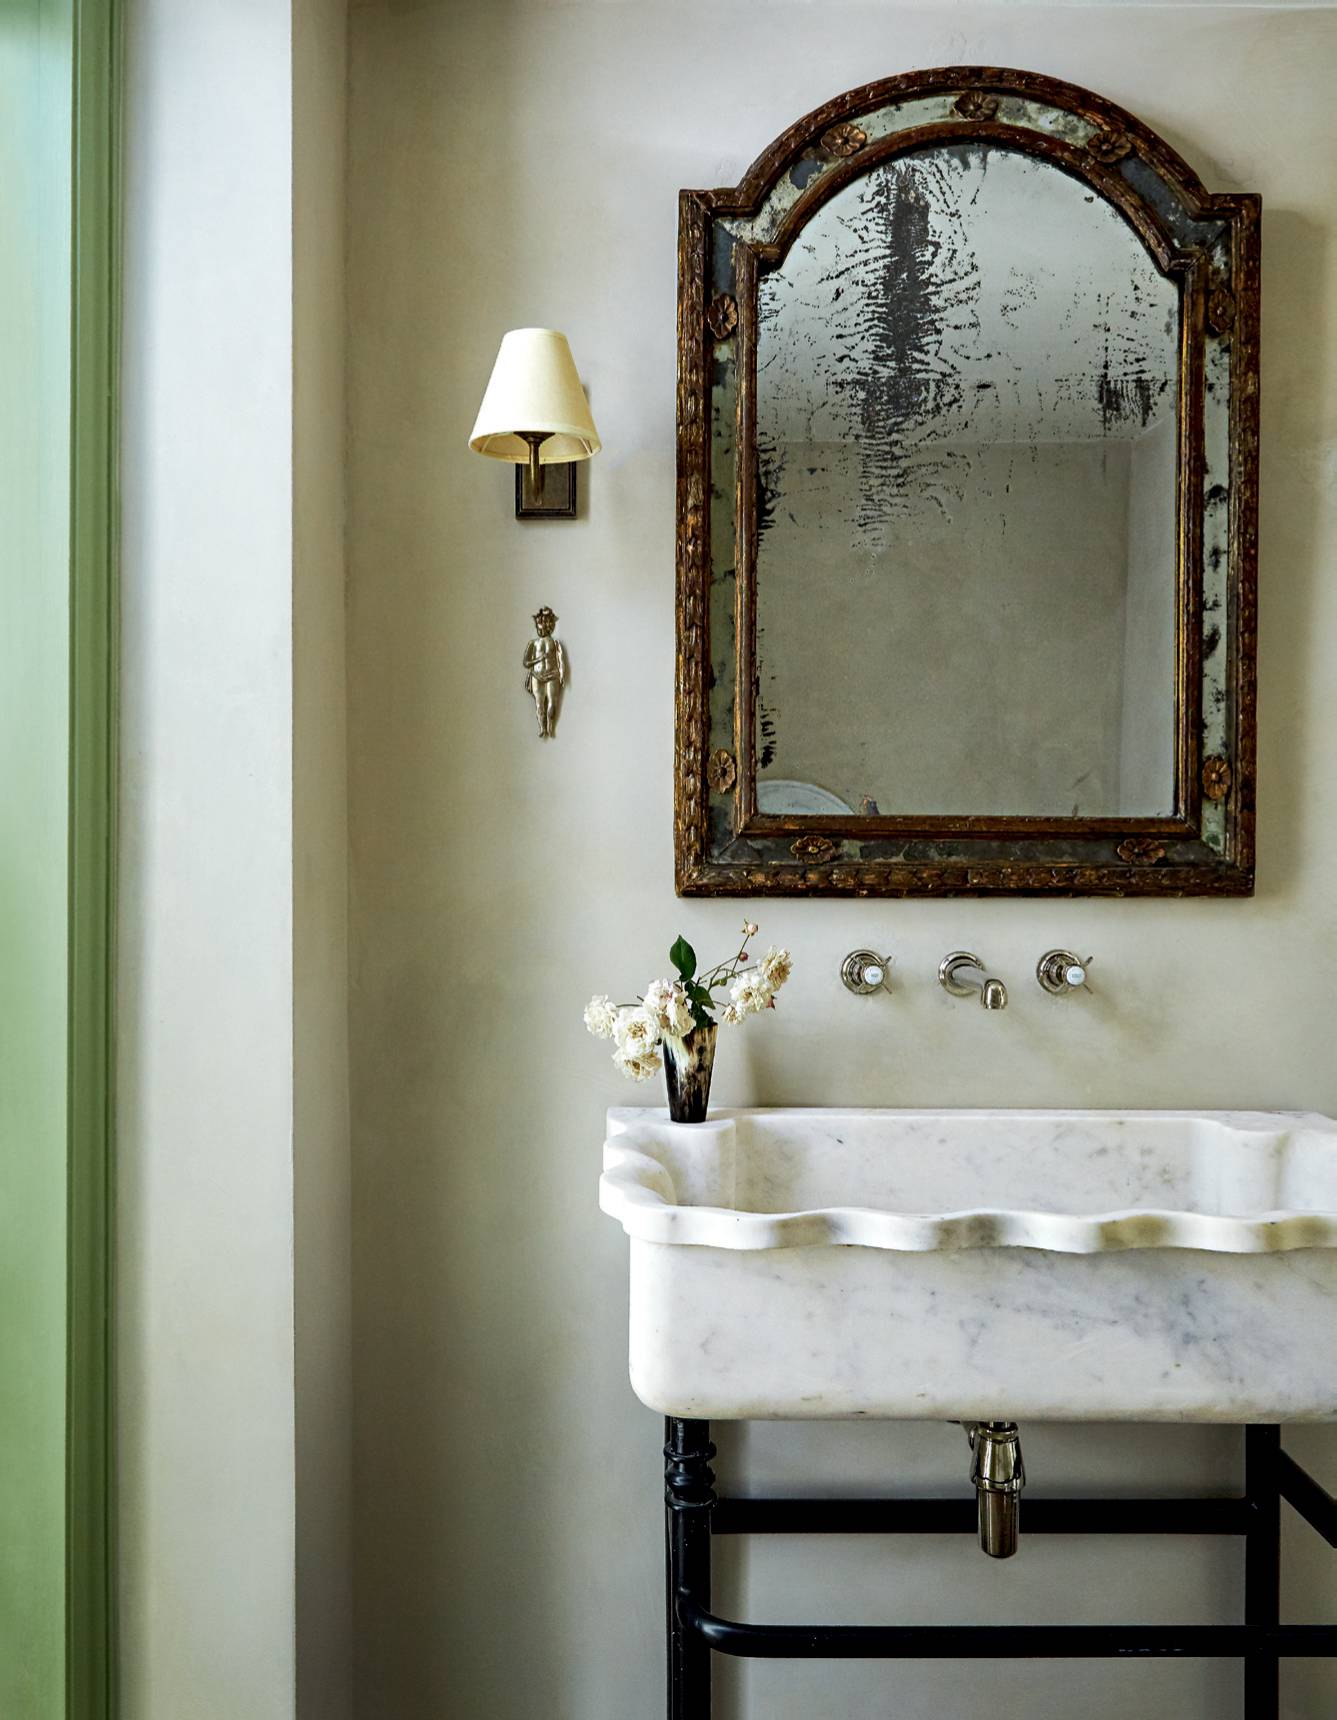 Bathroom Sinks And Vanities House, Old Fashioned Vanity Sink